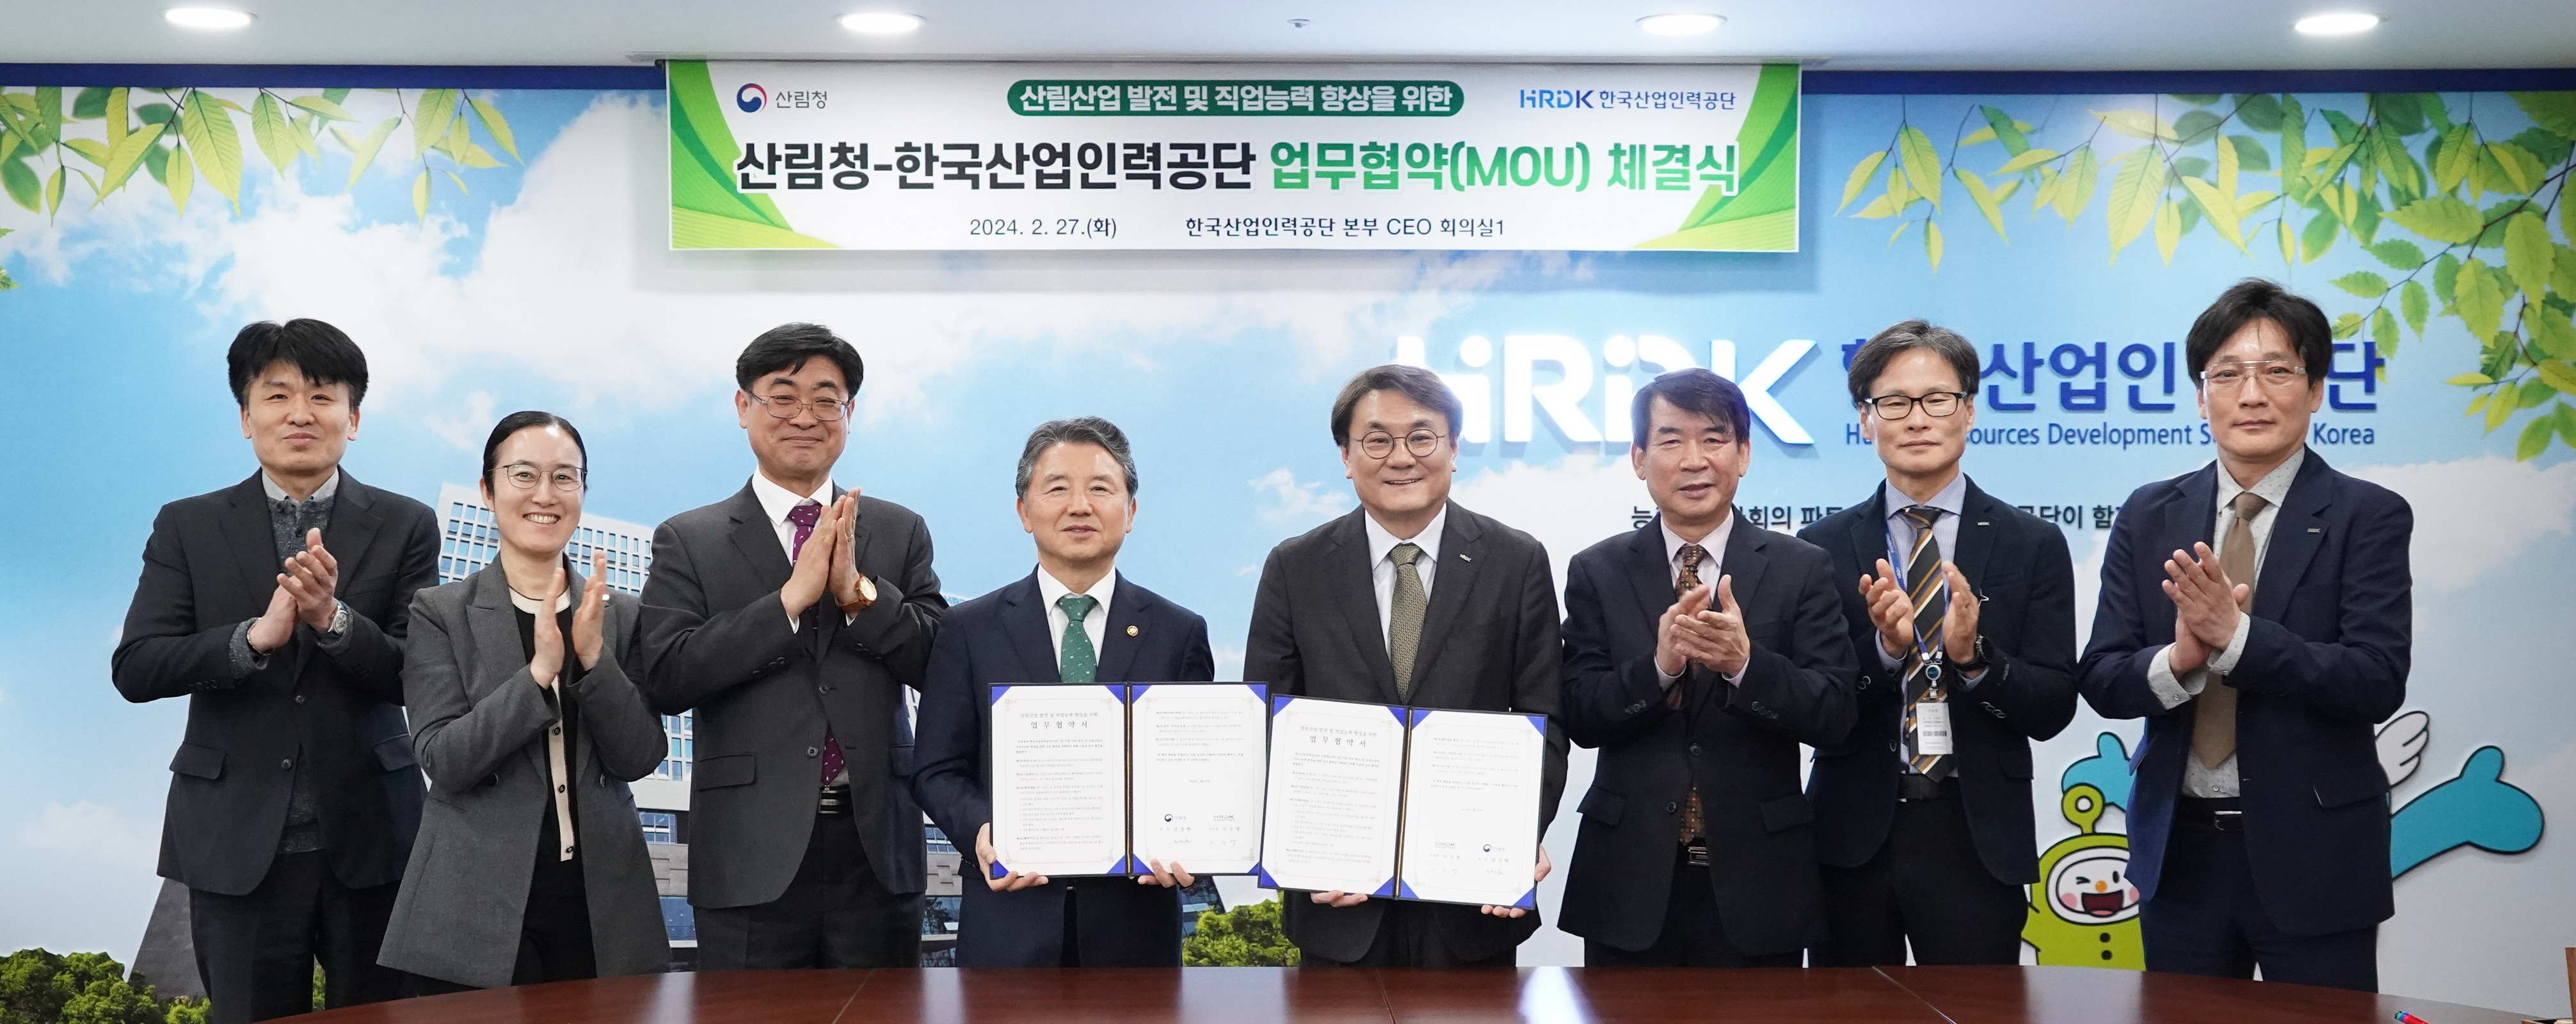 산림청-한국산업인력공단 산림산업 발전 위한 업무협약 체결 